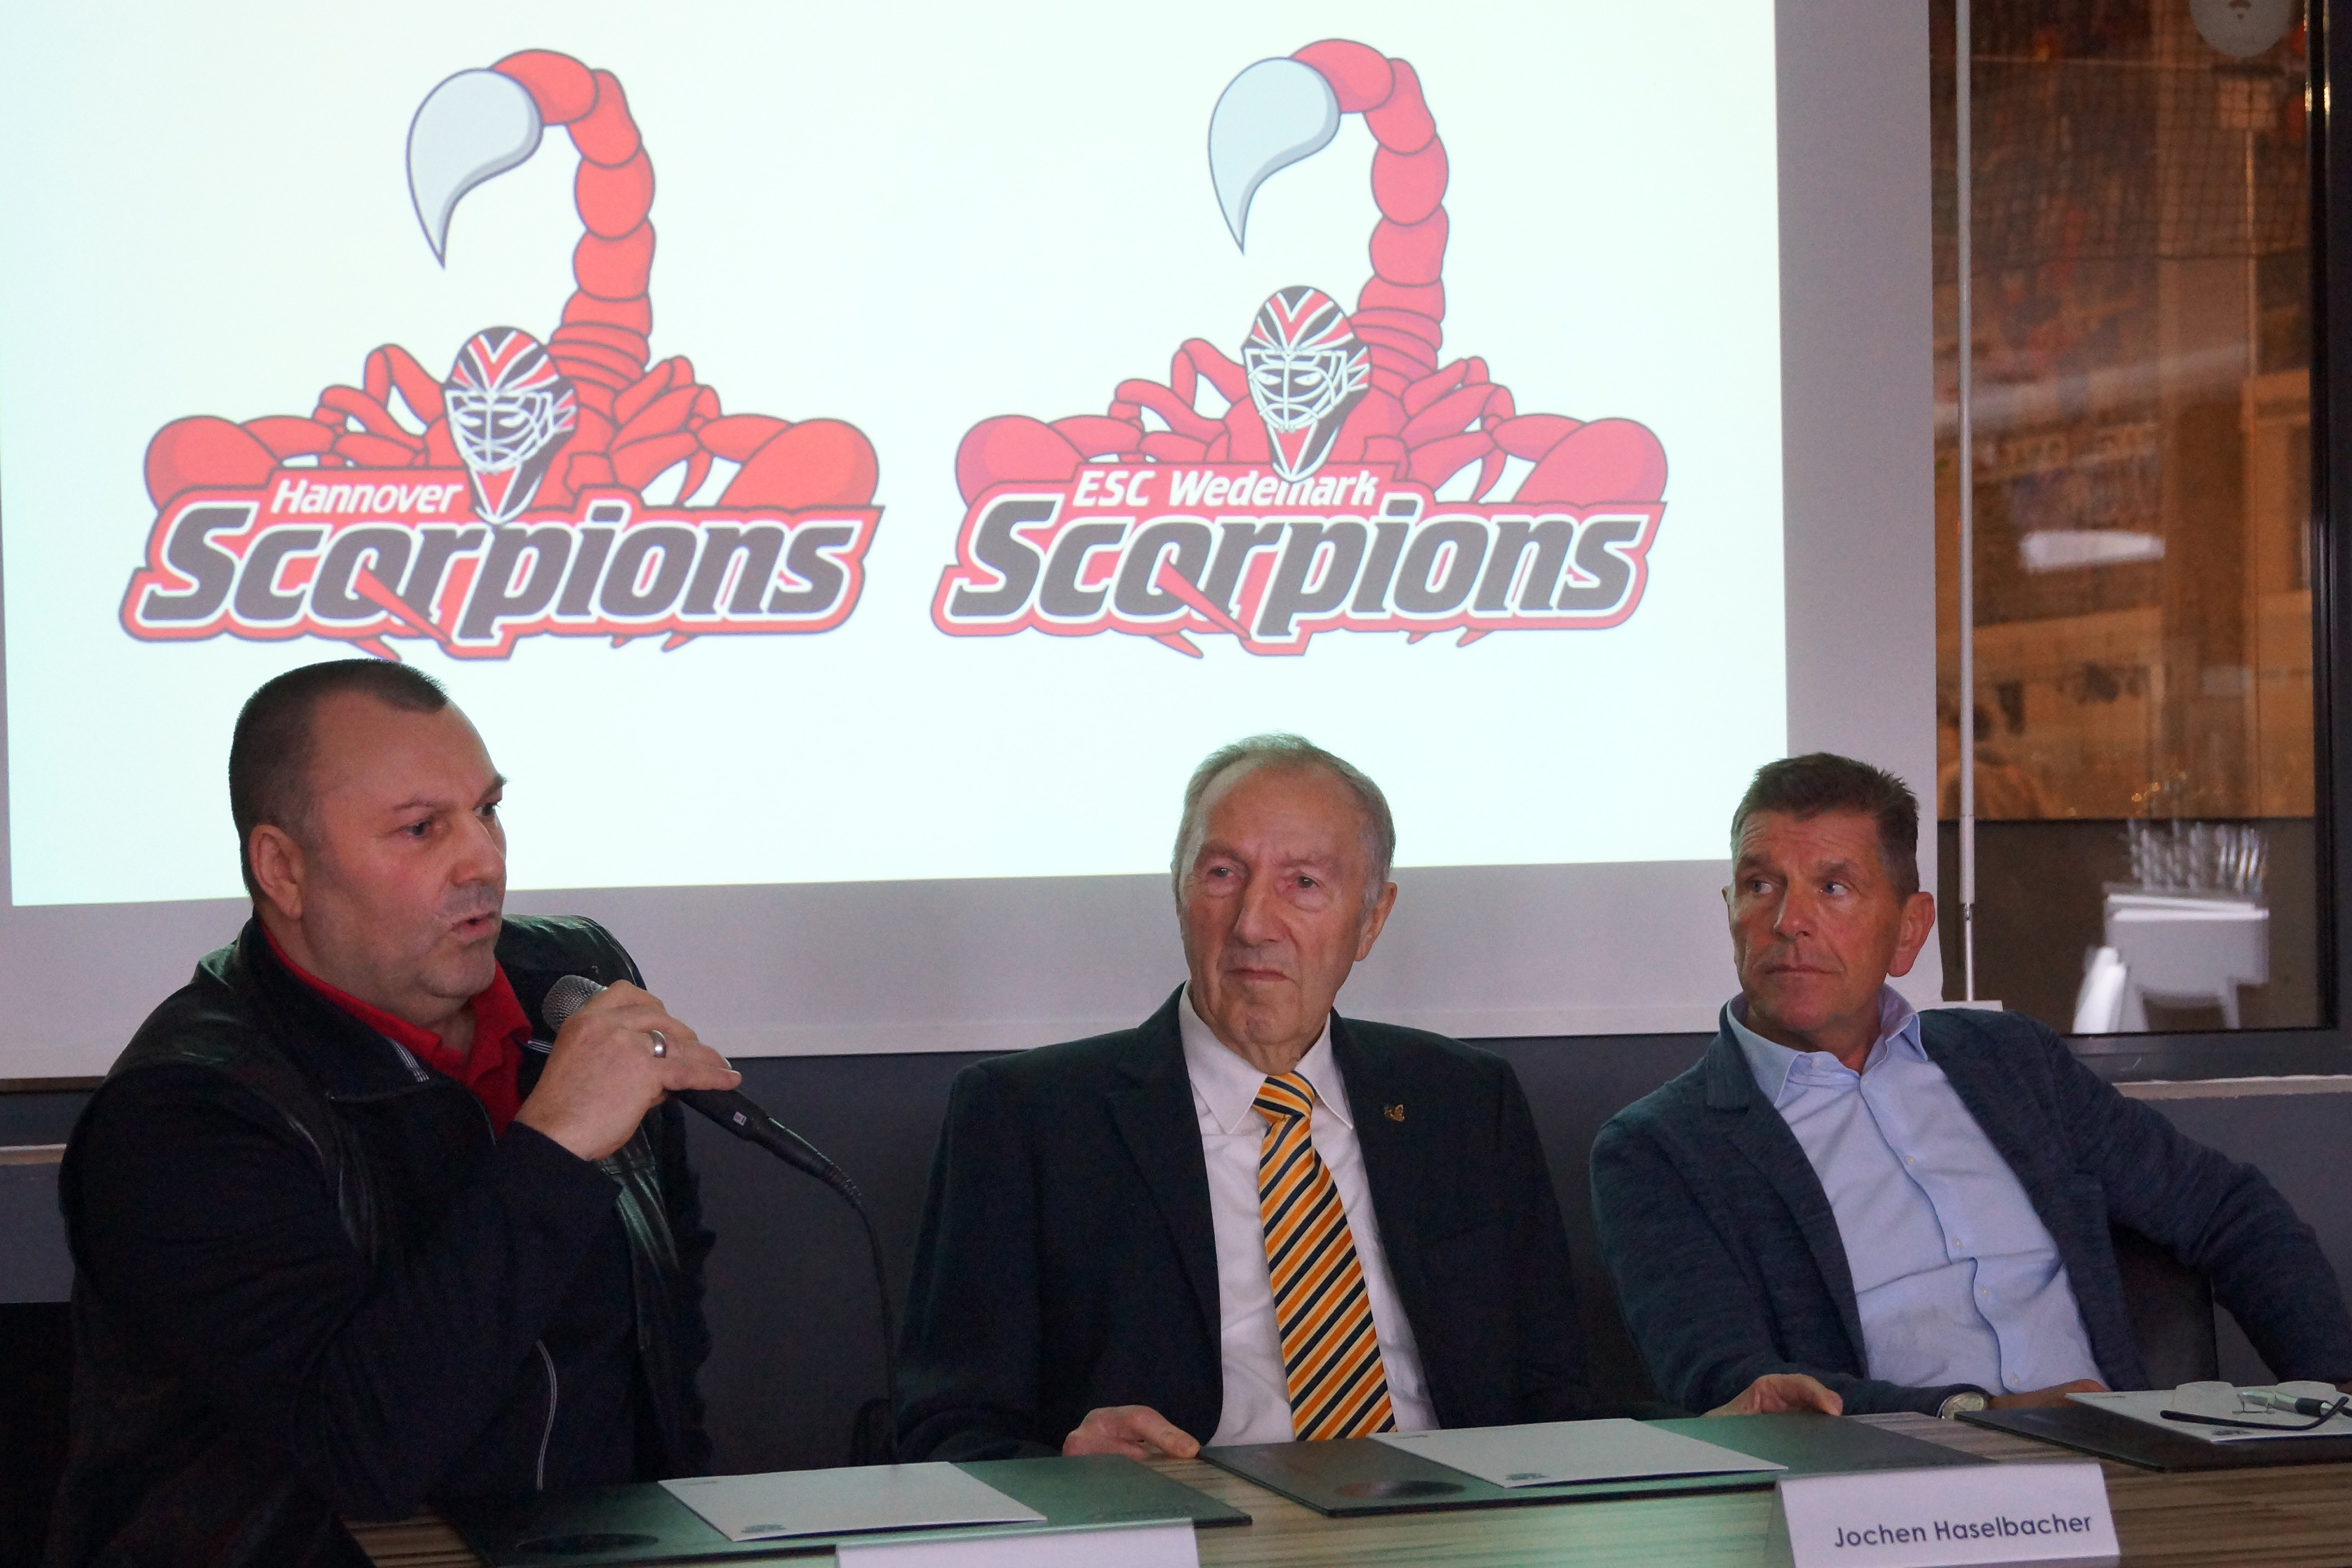 Wedemark und Hannover Scorpions wiedervereinigt